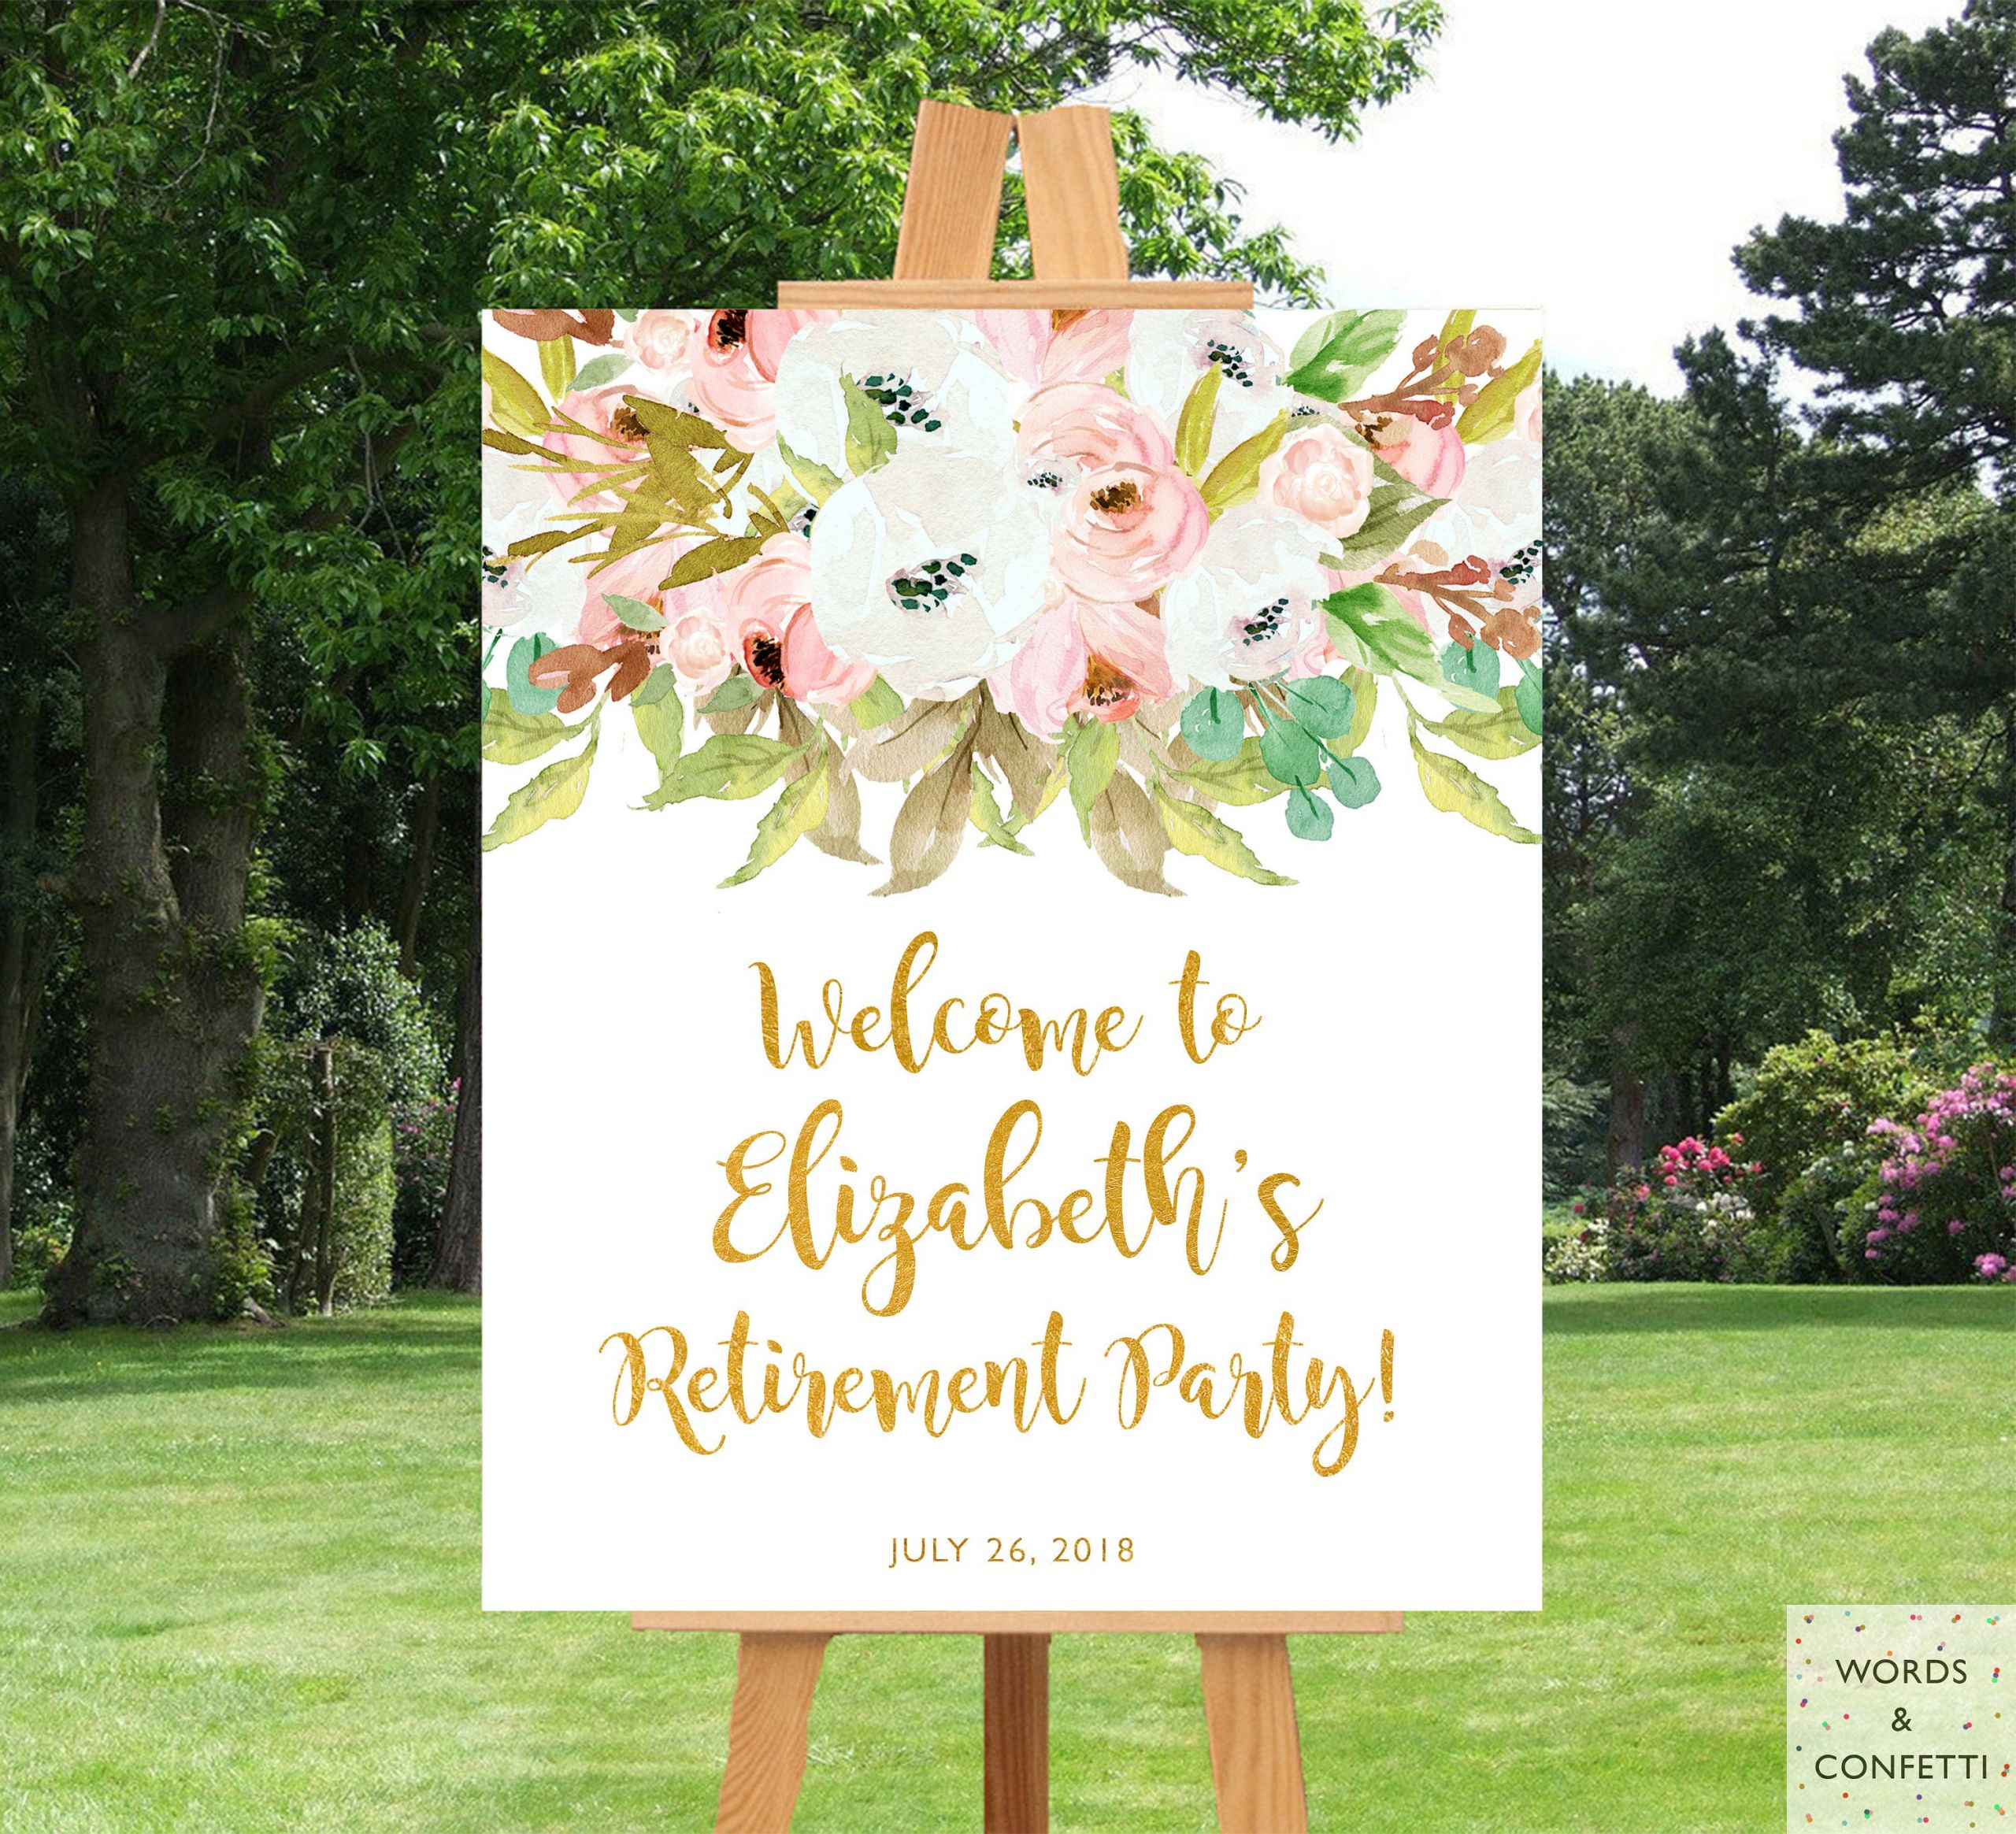 Party Ideas For Retirement
 Retirement Party Decorations For Women Elegant Retirement